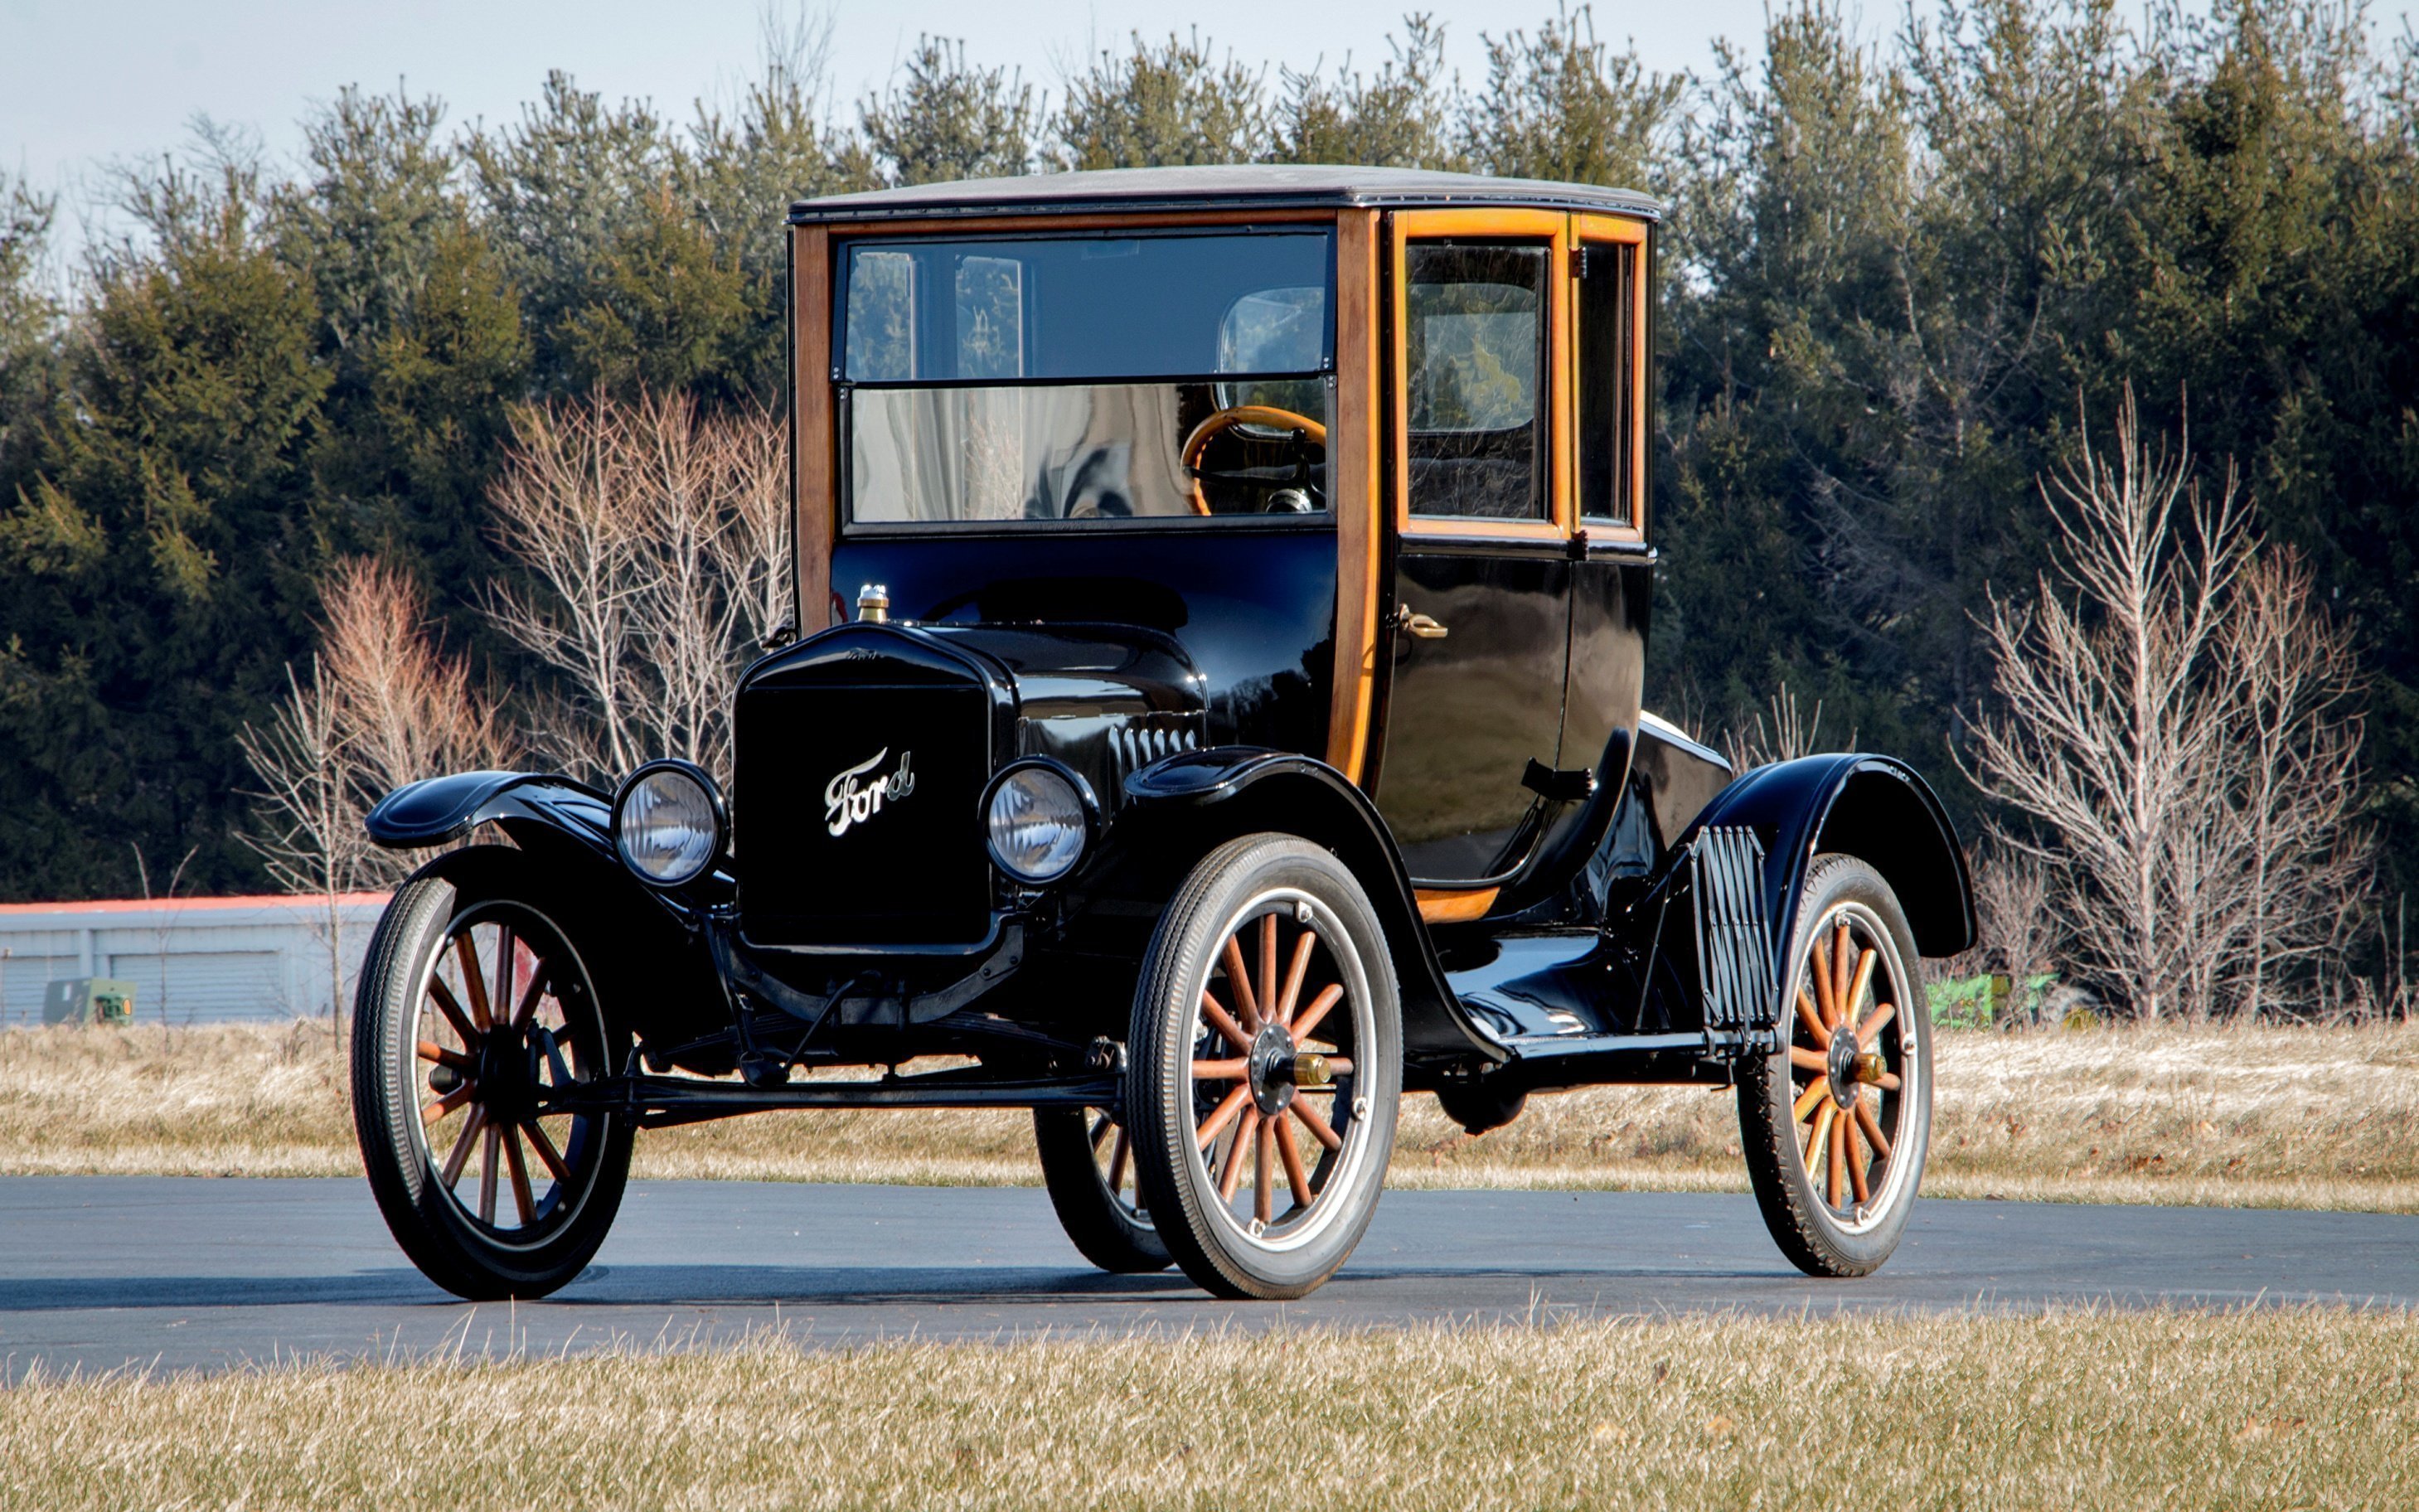 Год выпуска первой машины. Ford model t 1908 и 1927.